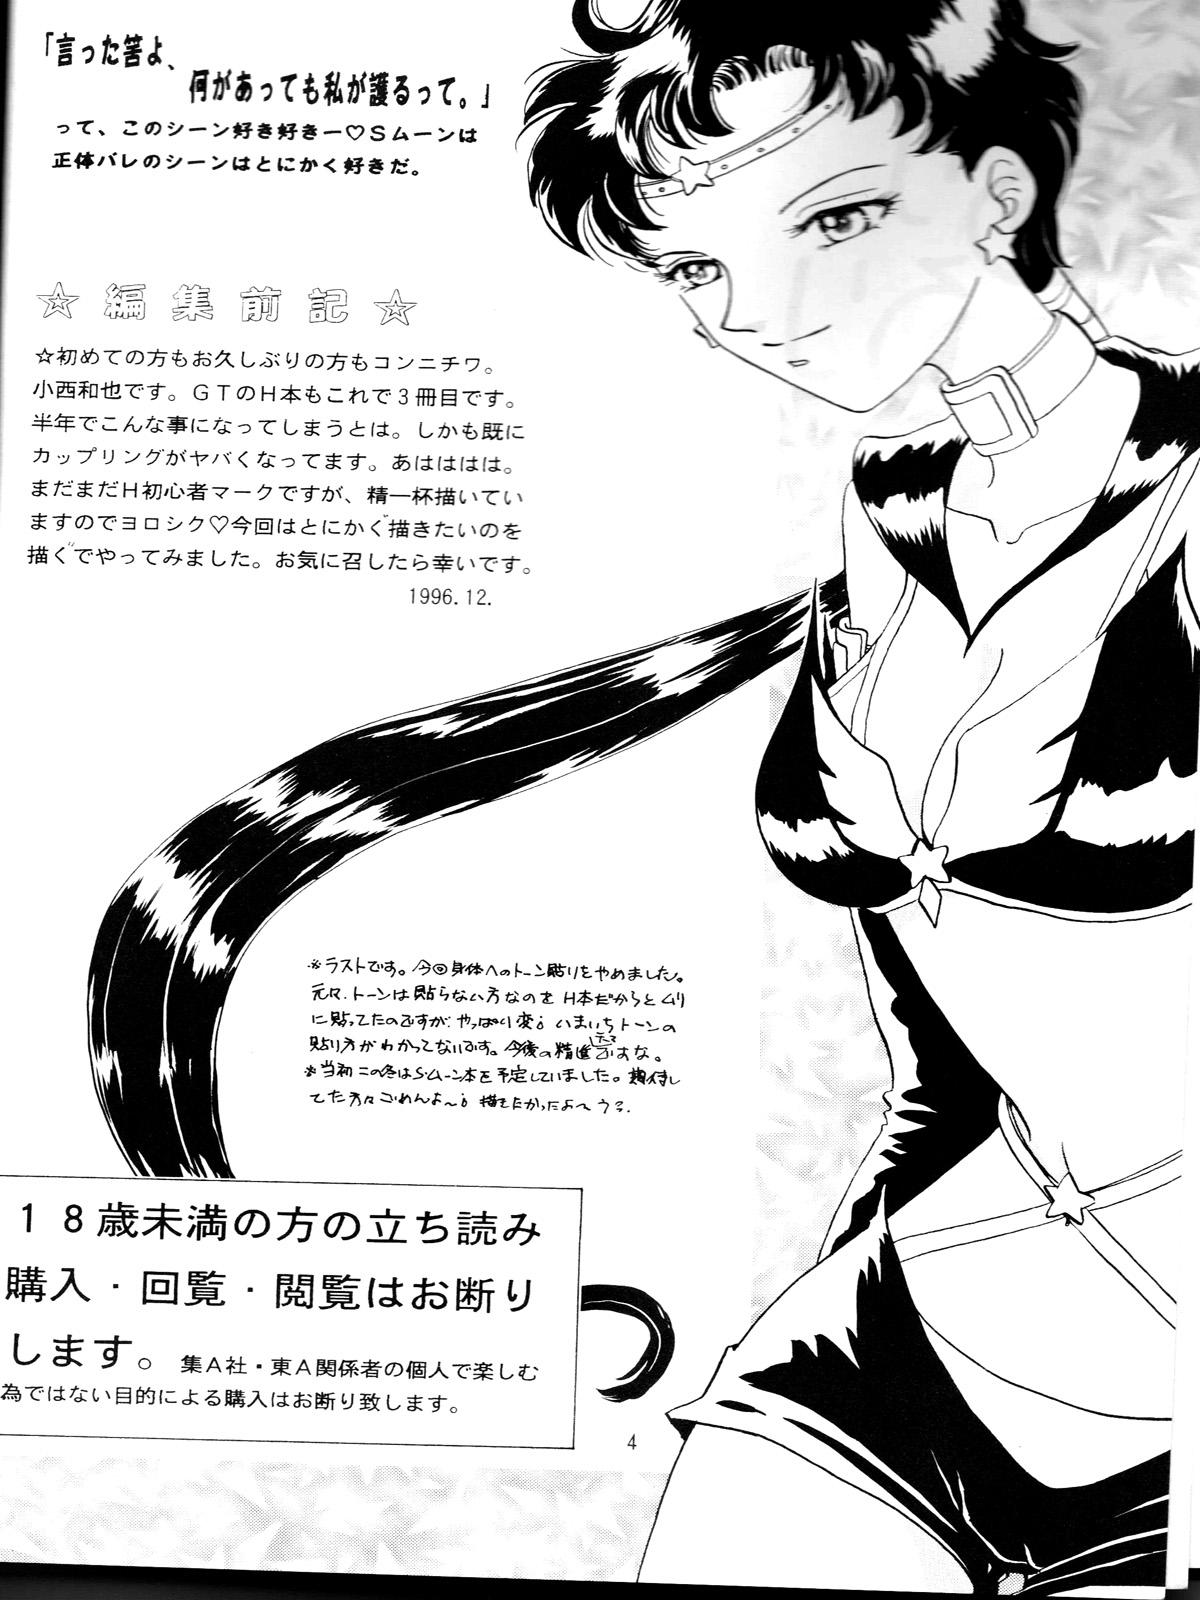 Camgirl Ruri Rui - Dragon ball gt Art - Page 3